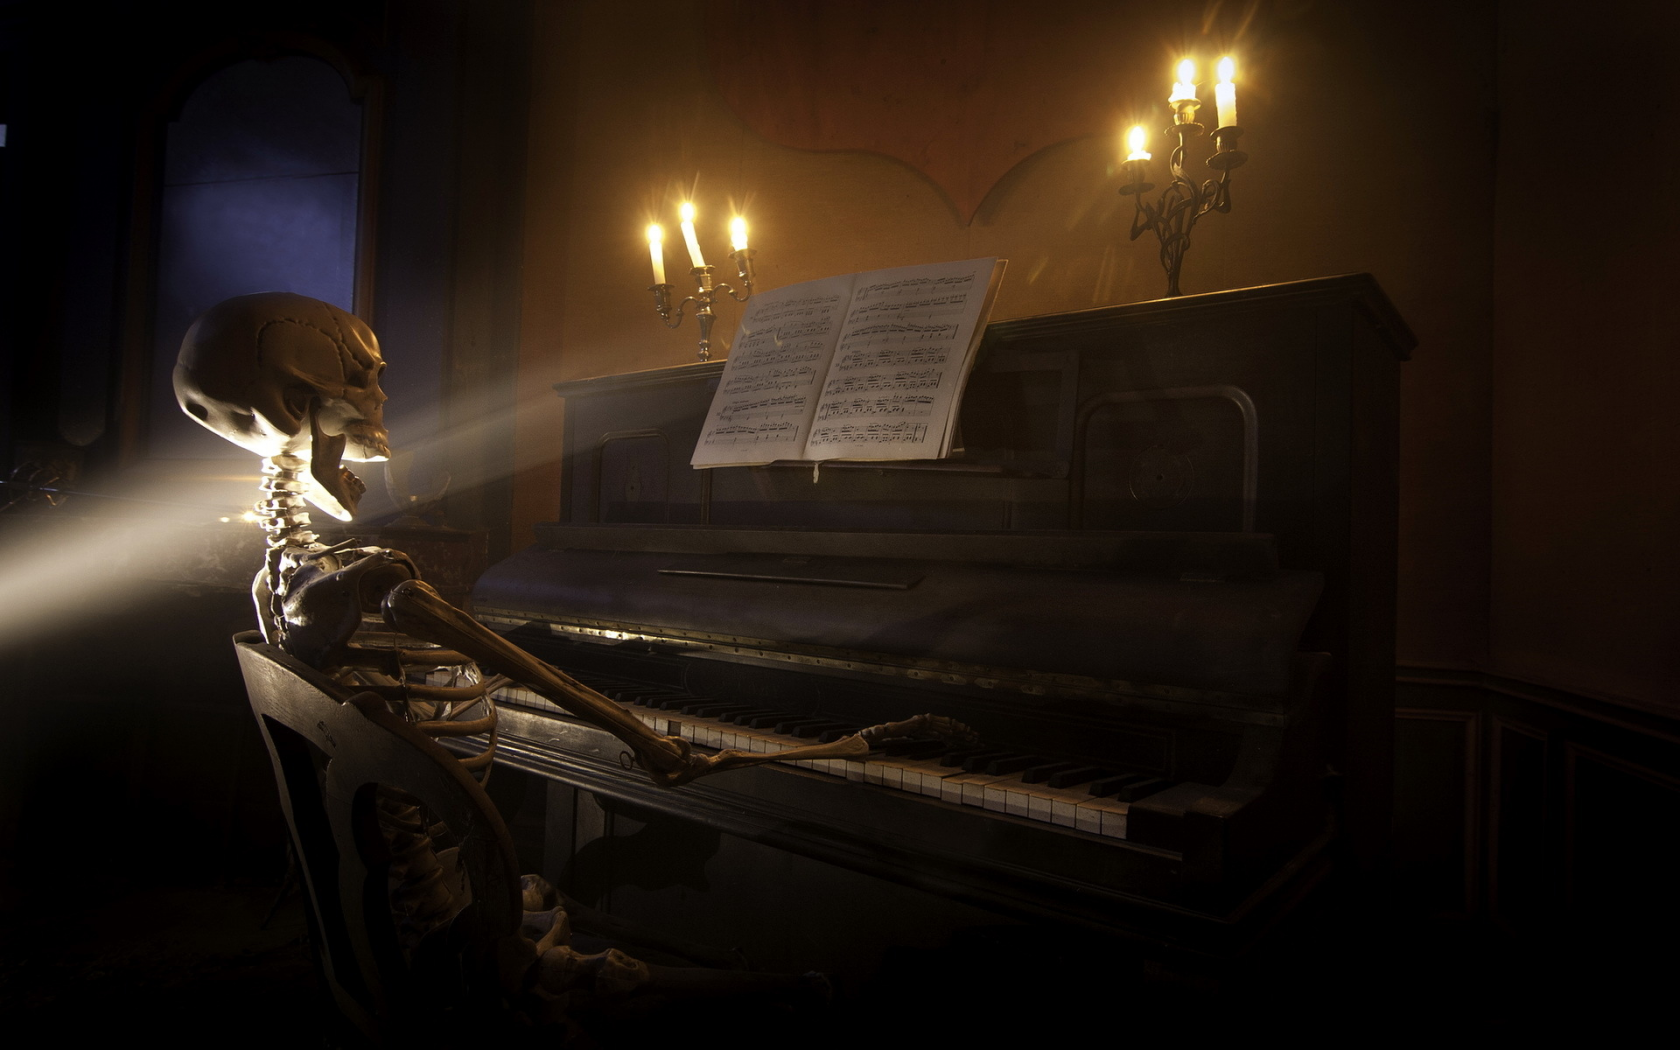 Фон, чёрный, пианино, скелет.